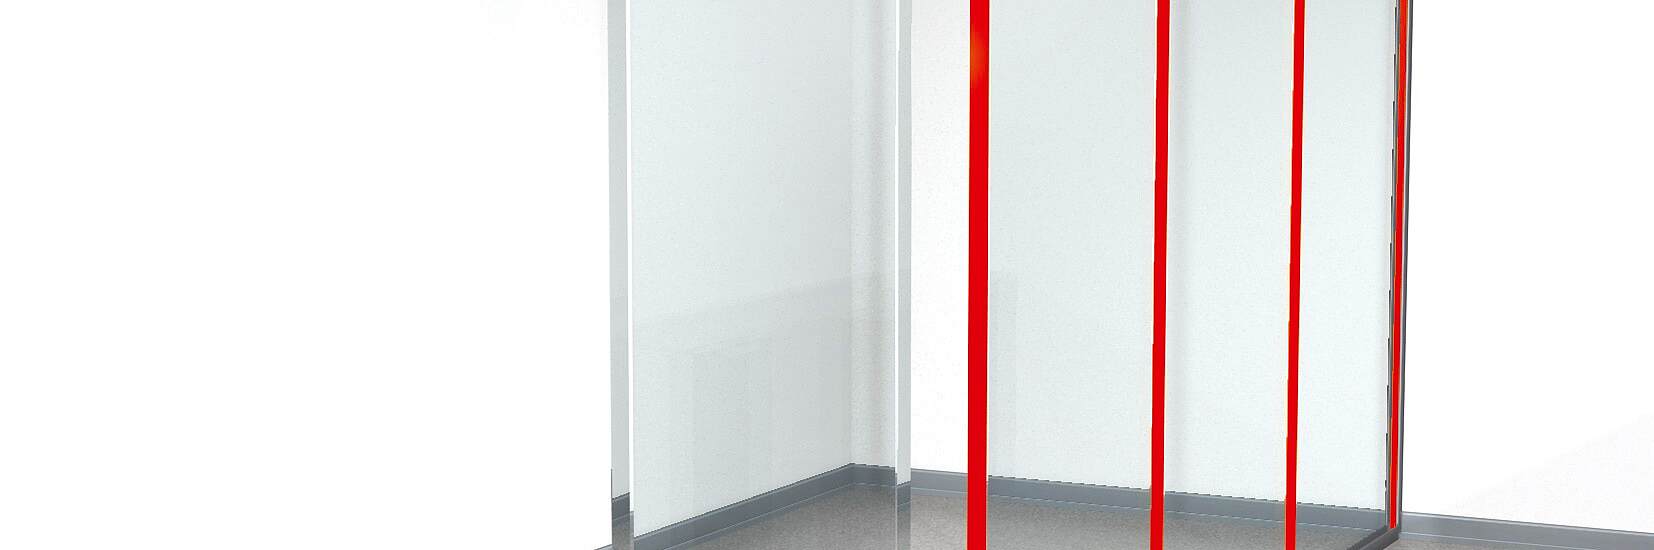 Soluciones de cinta adhesiva para paredes divisorias en oficinas